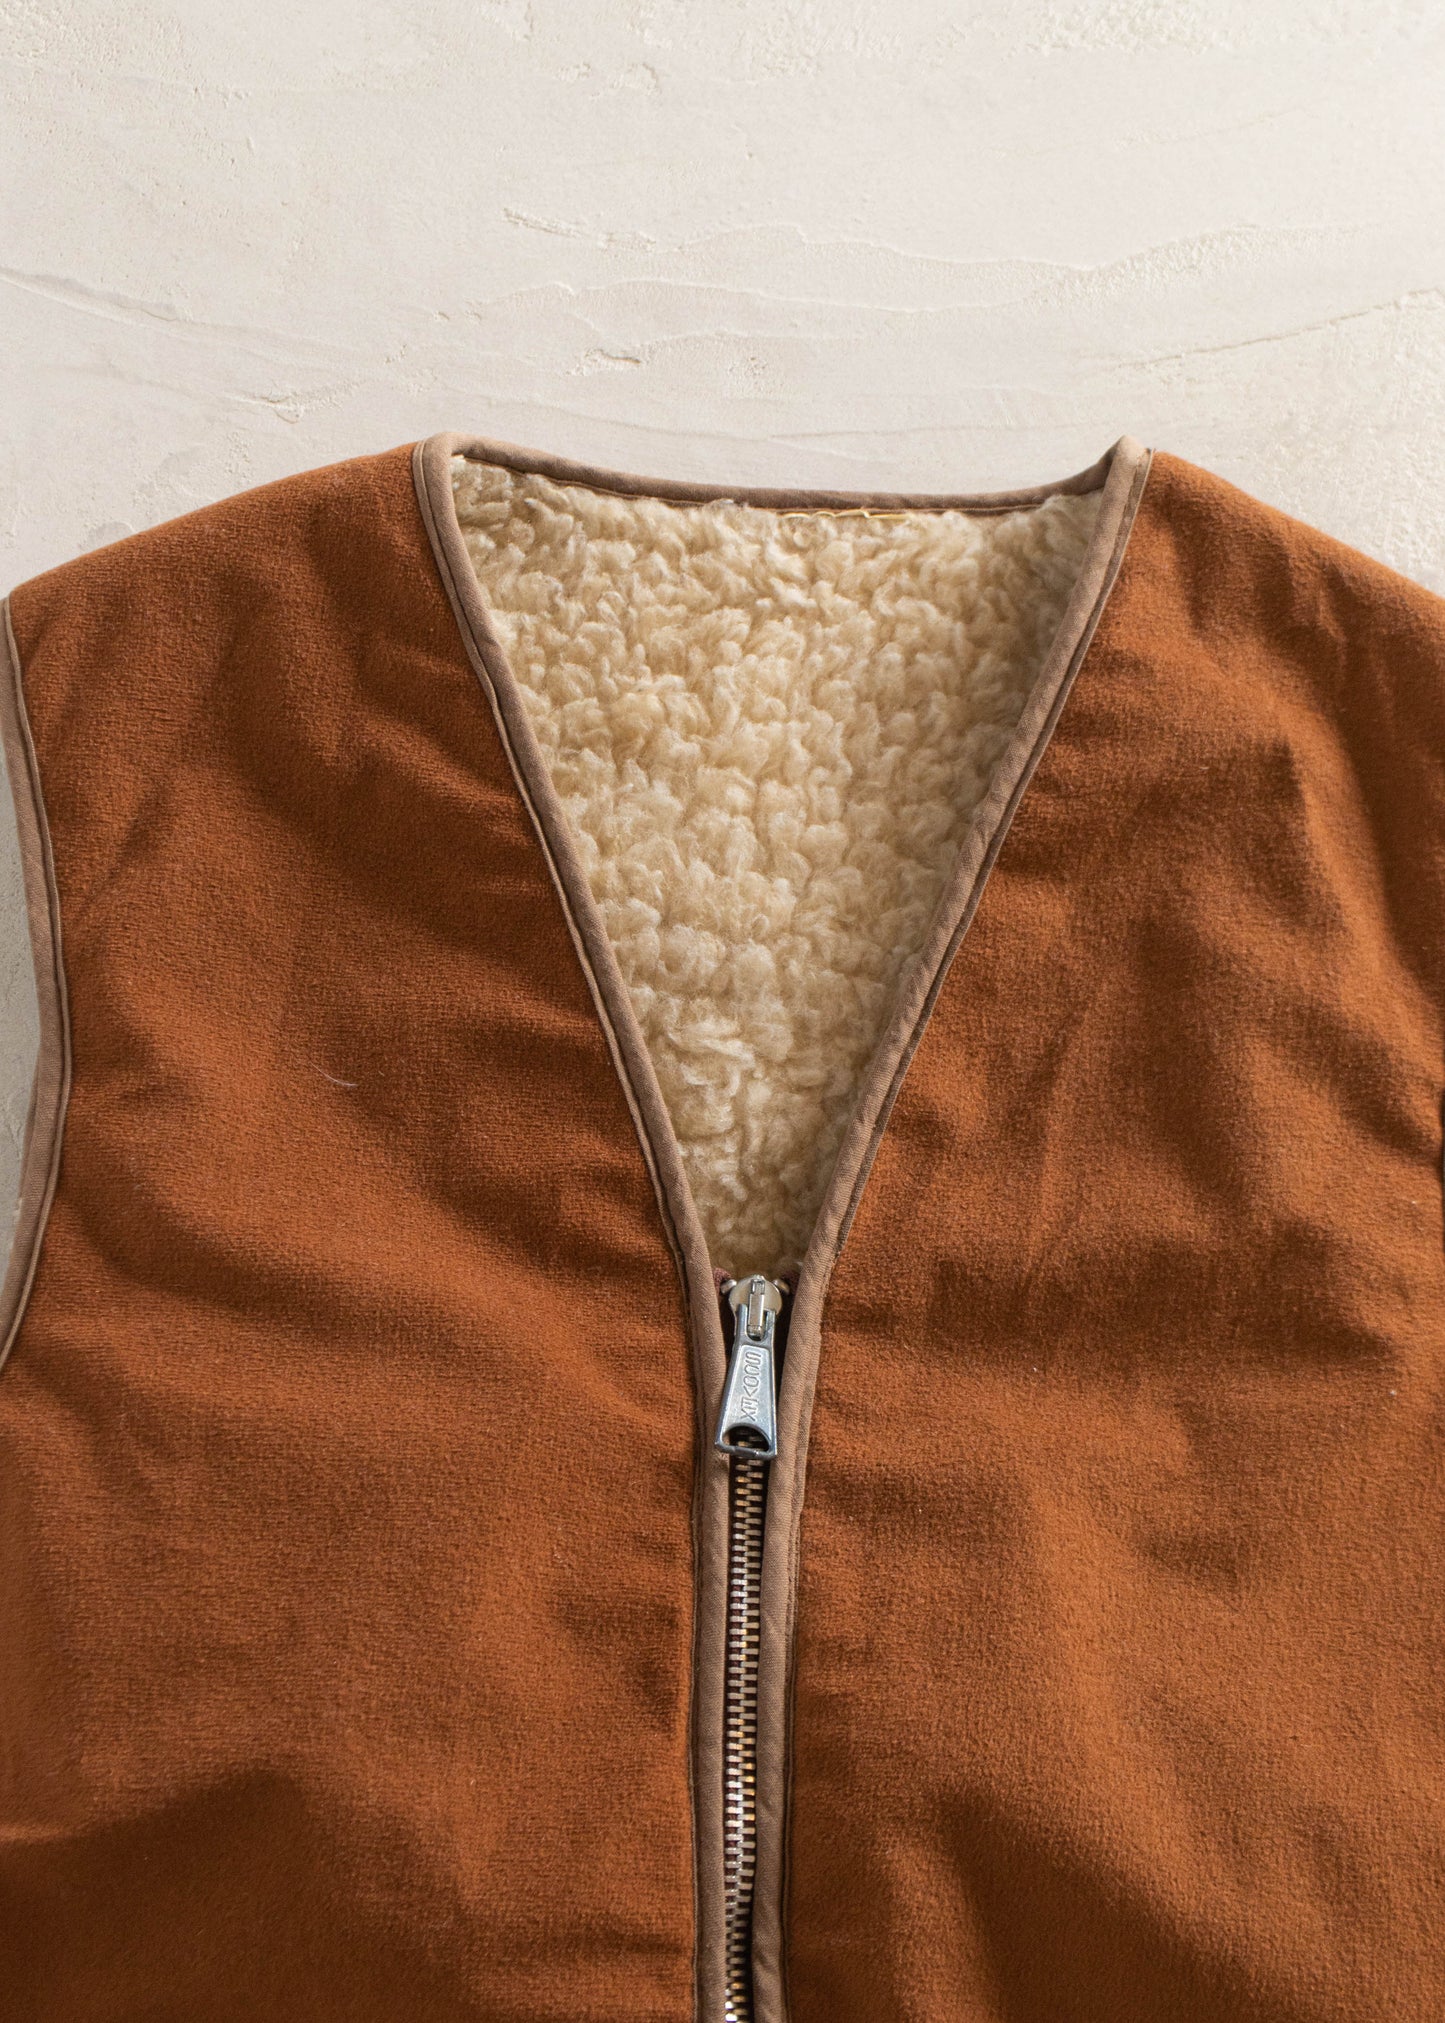 1980s Sherpa Lined Vest Size 2XS/XS